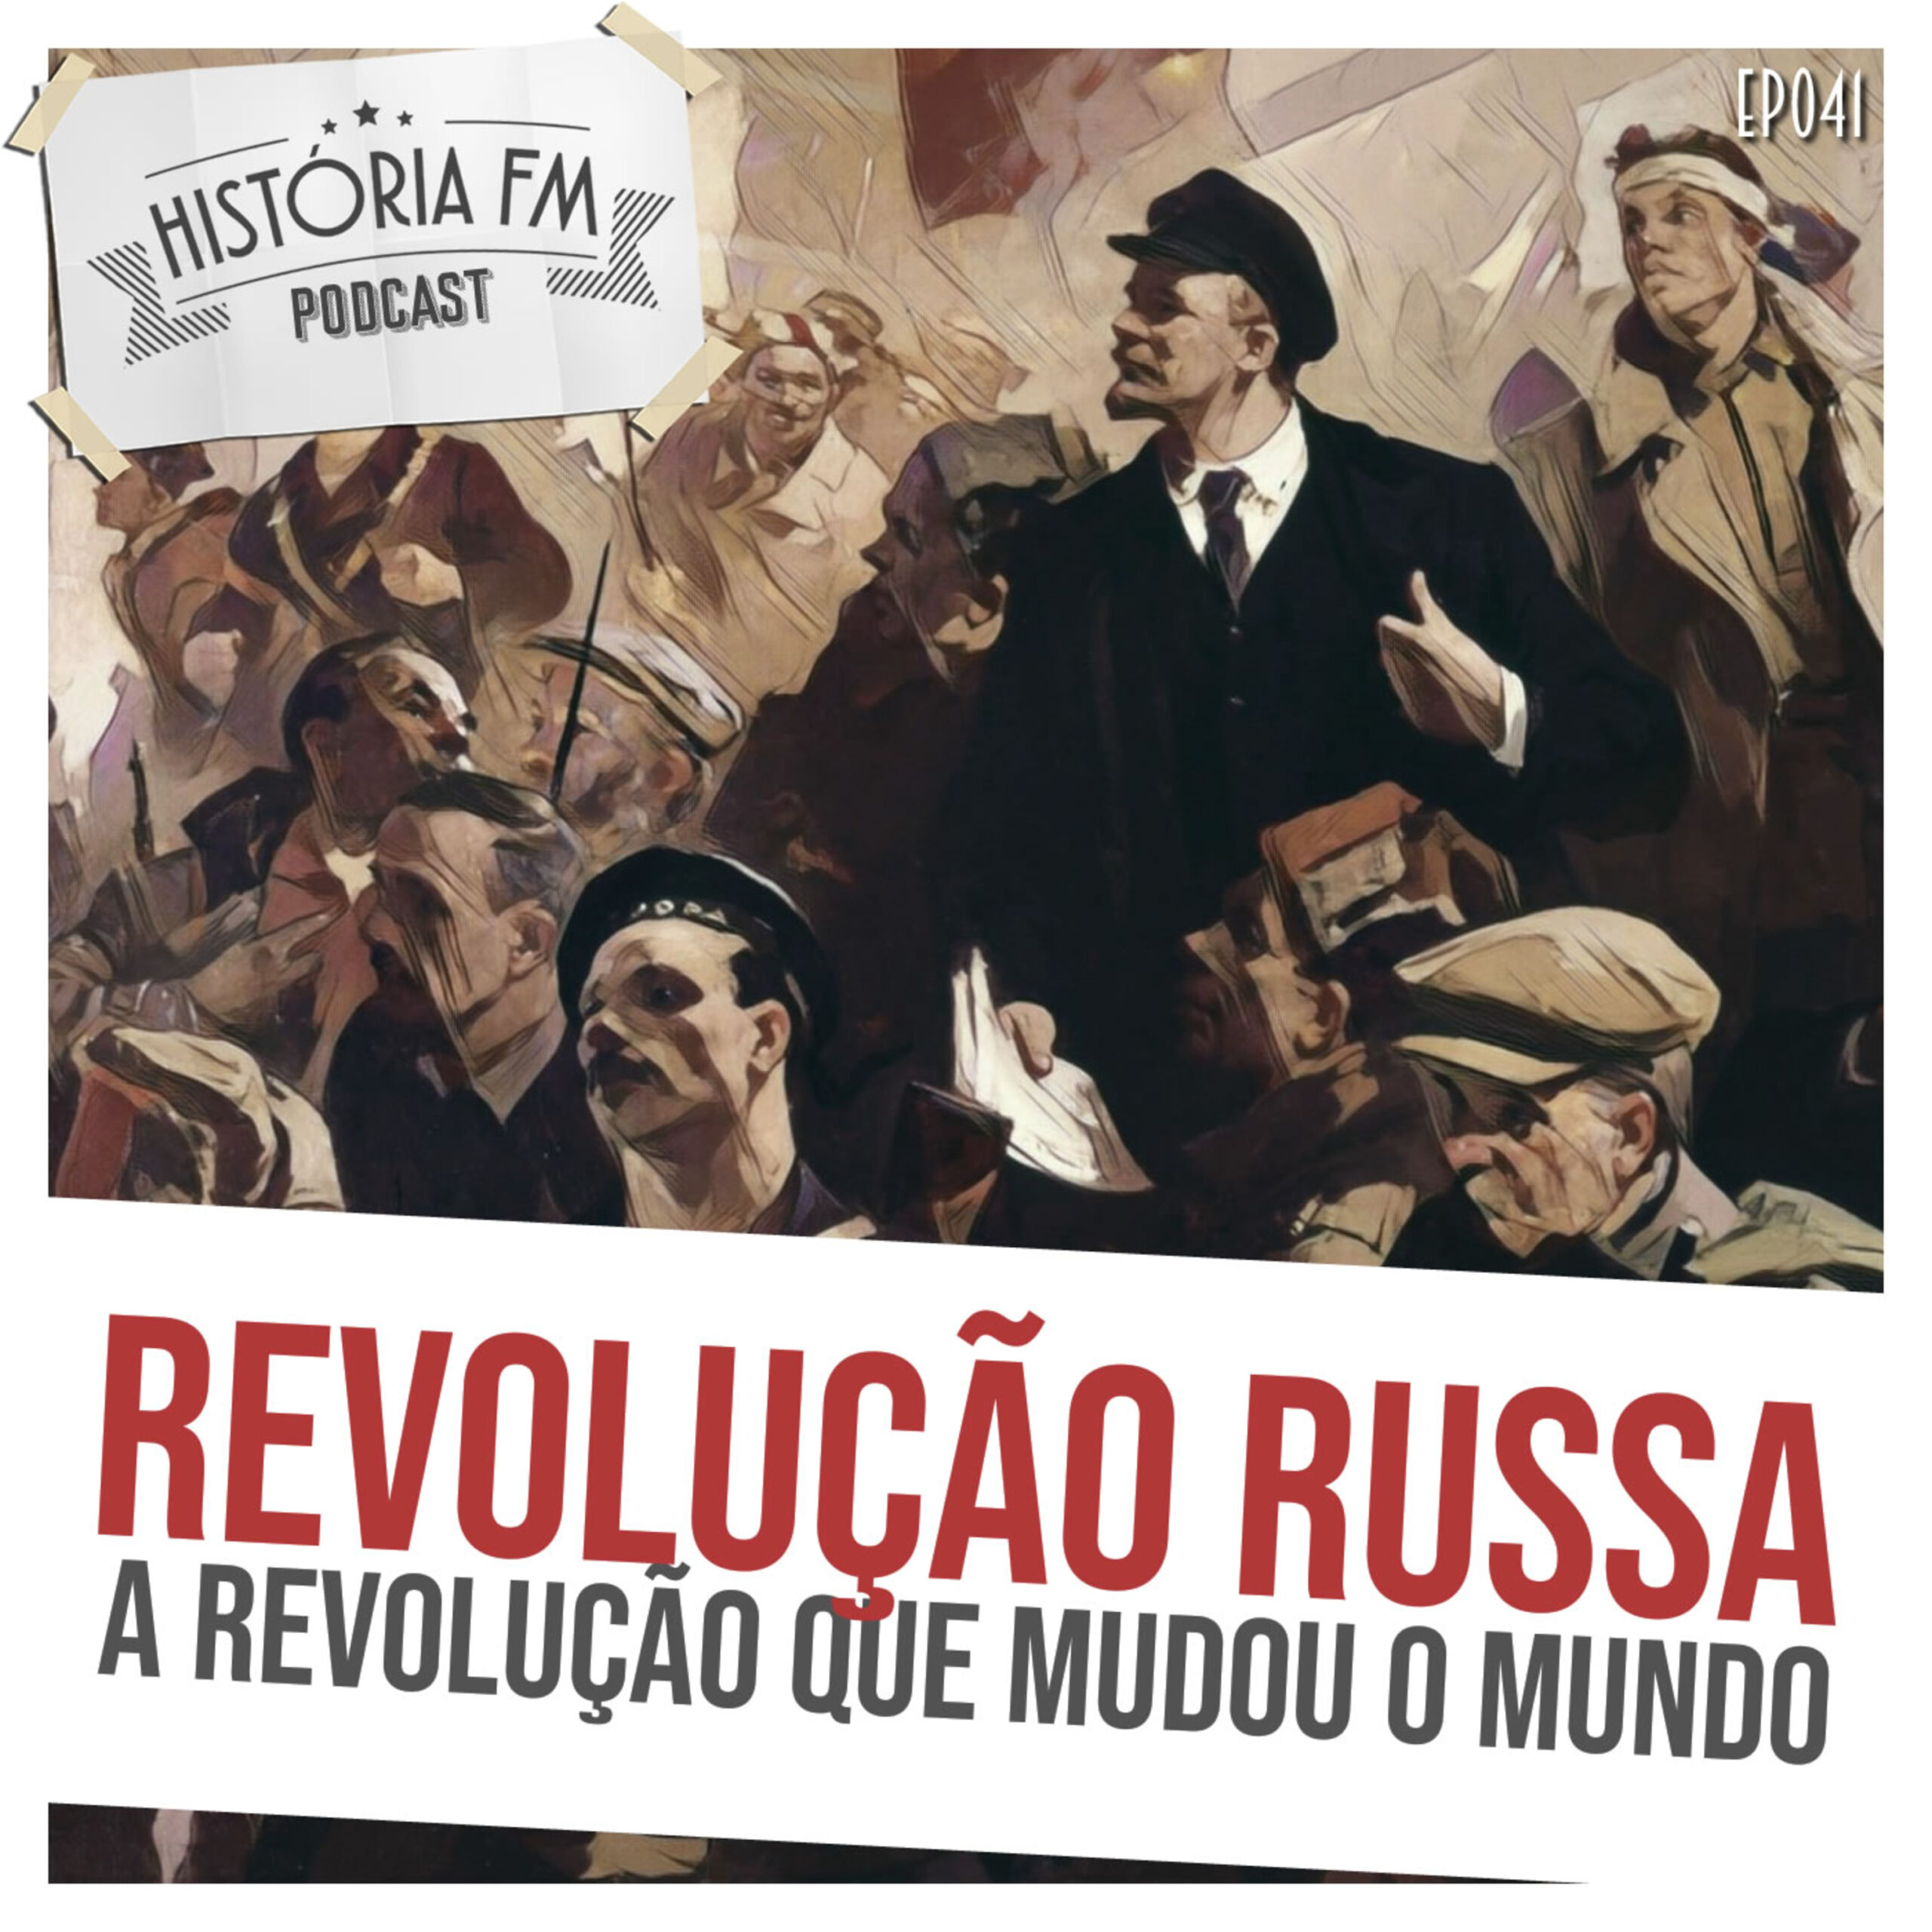 Revolução Russa: a revolução que mudou o mundo